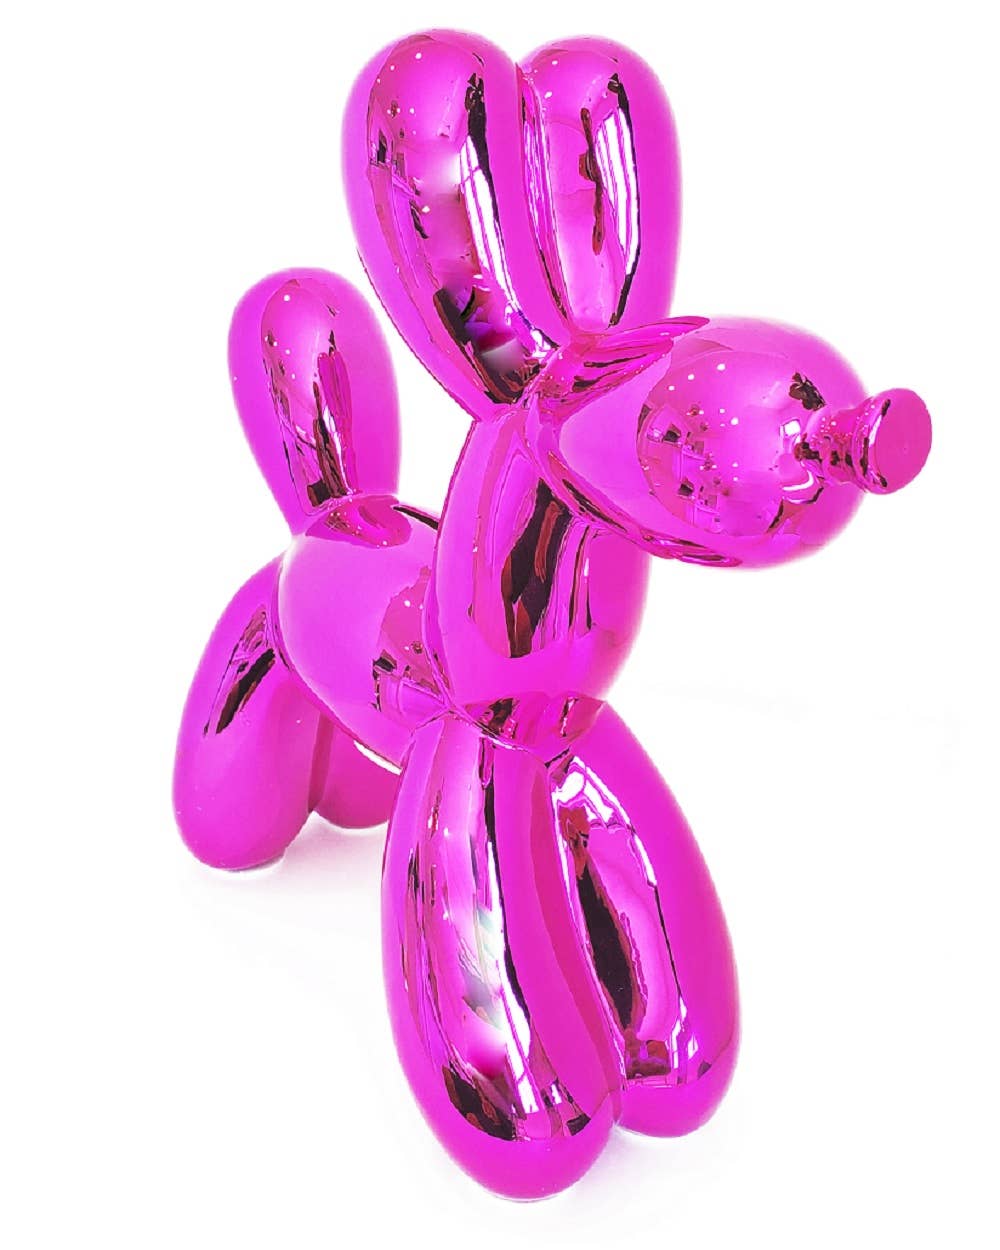 Hot Pink Balloon Dog Bank - 12" tall